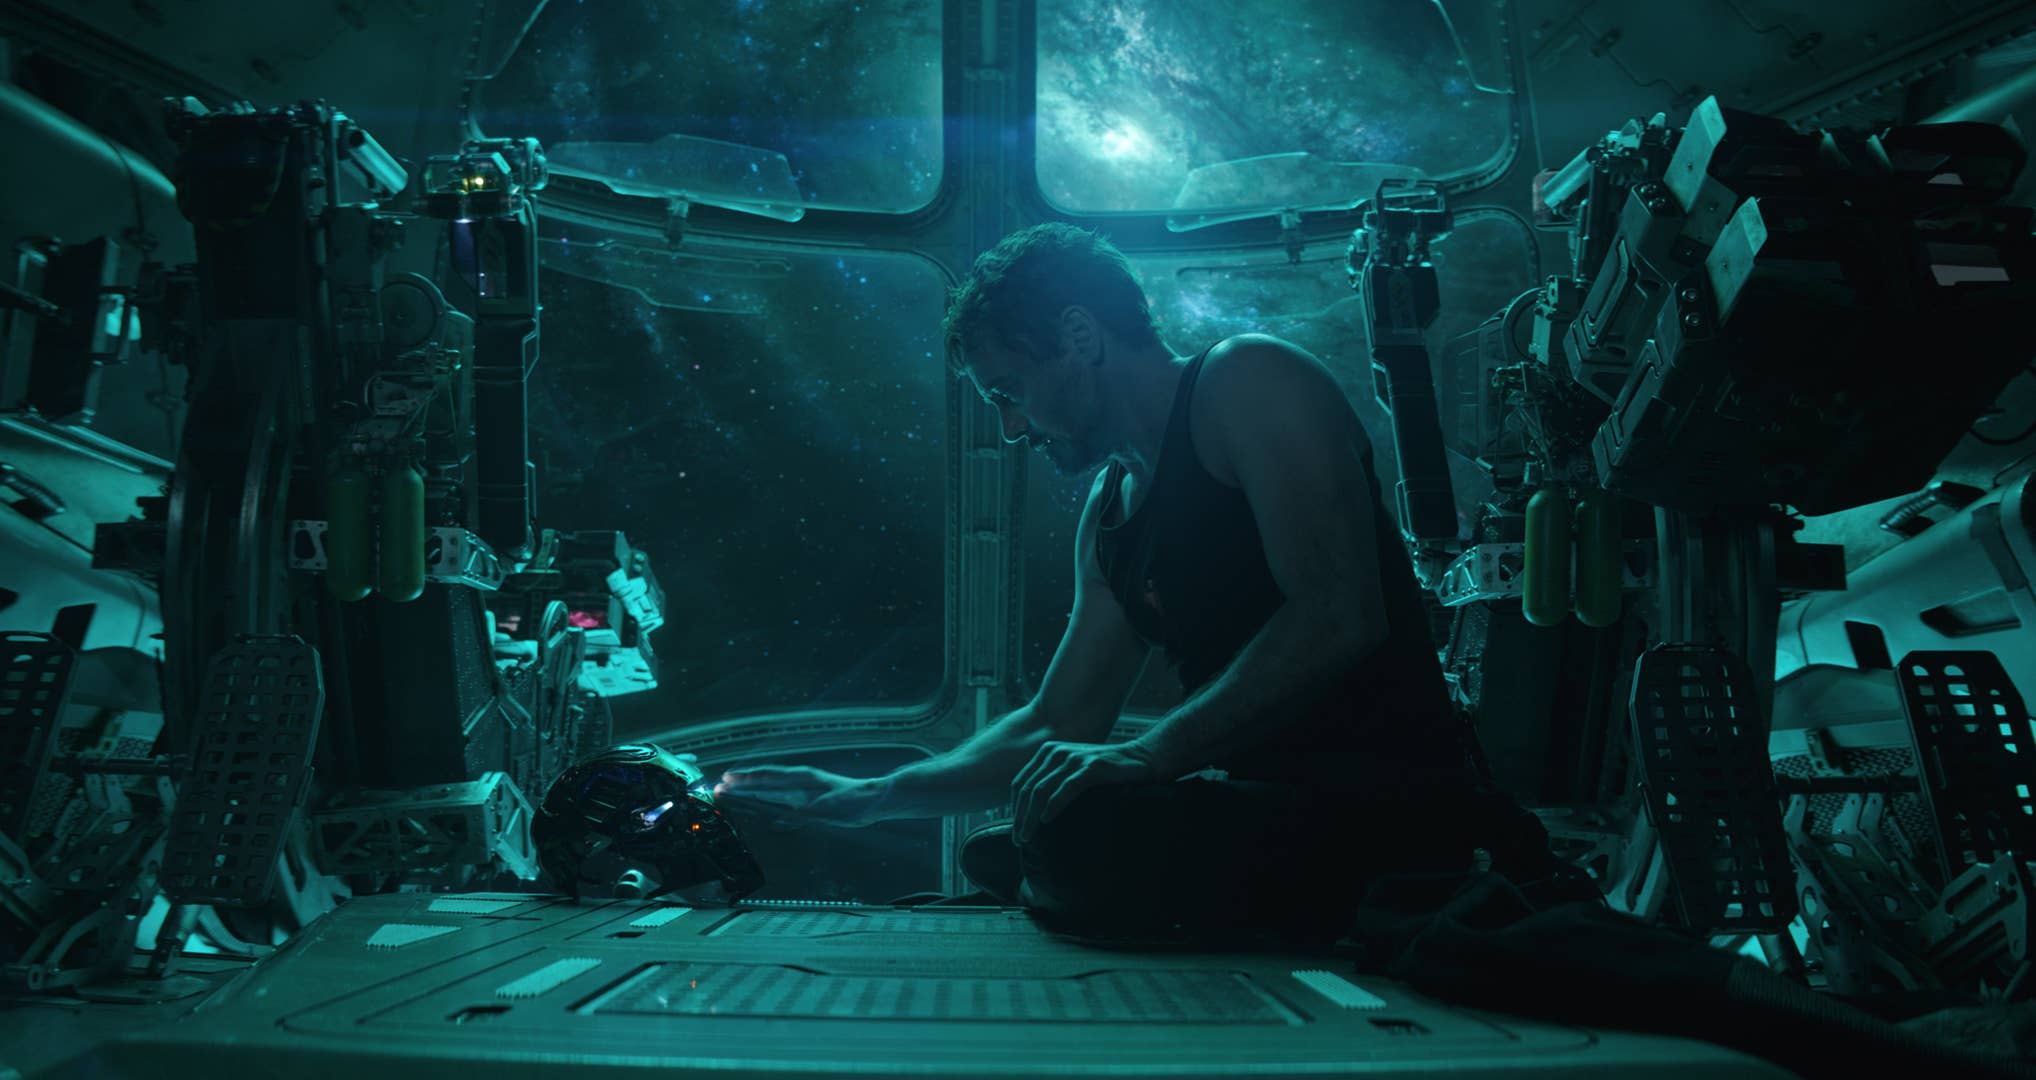 Robert Downey Jr. as Tony Stark / Iron Man in 'Avengers: Endgame'